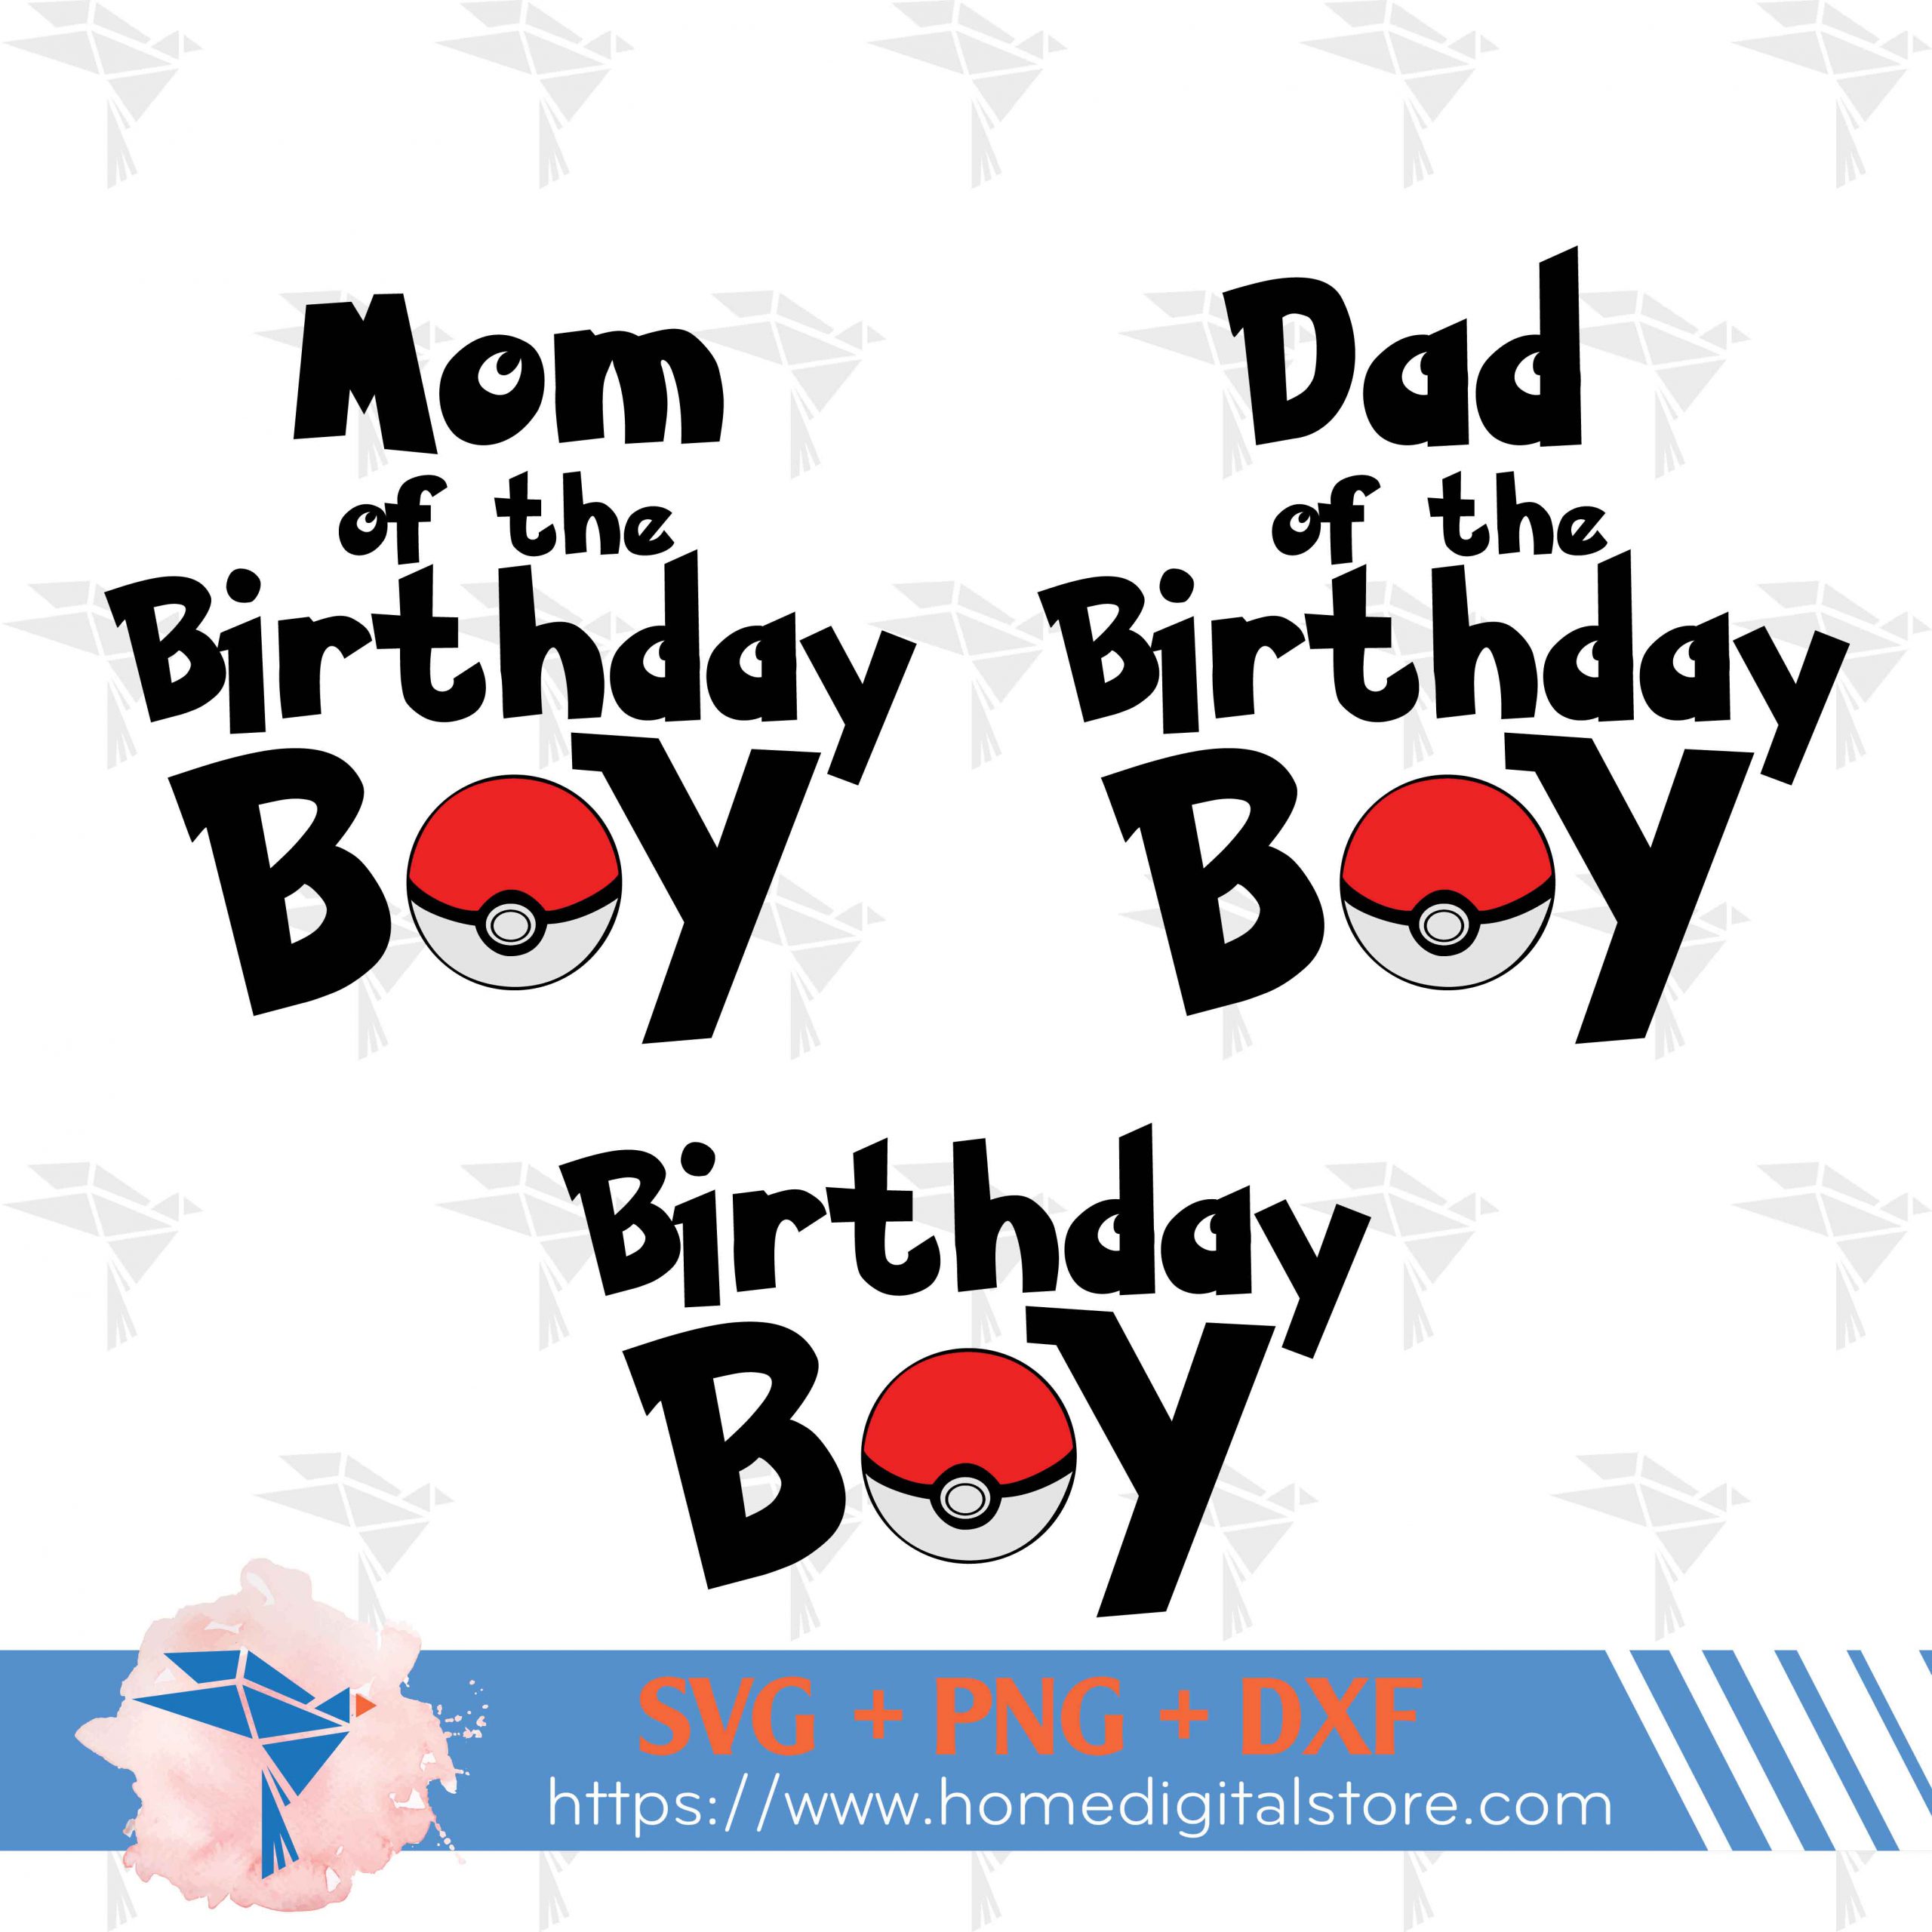 pokemon happy birthday font